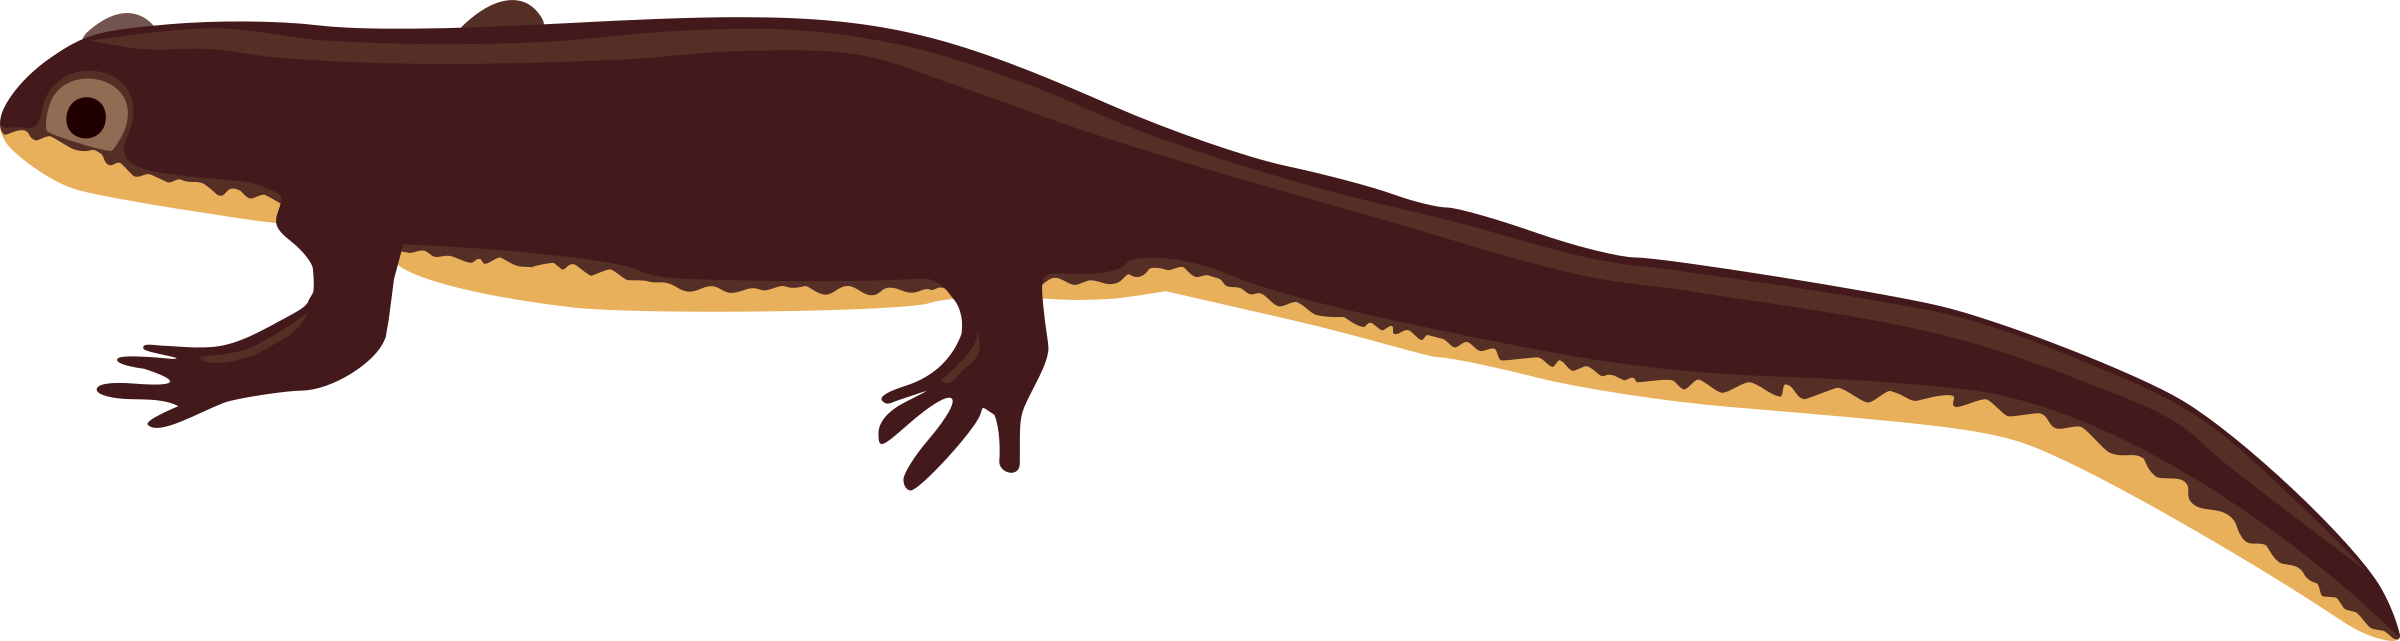 Salamander PNG Image